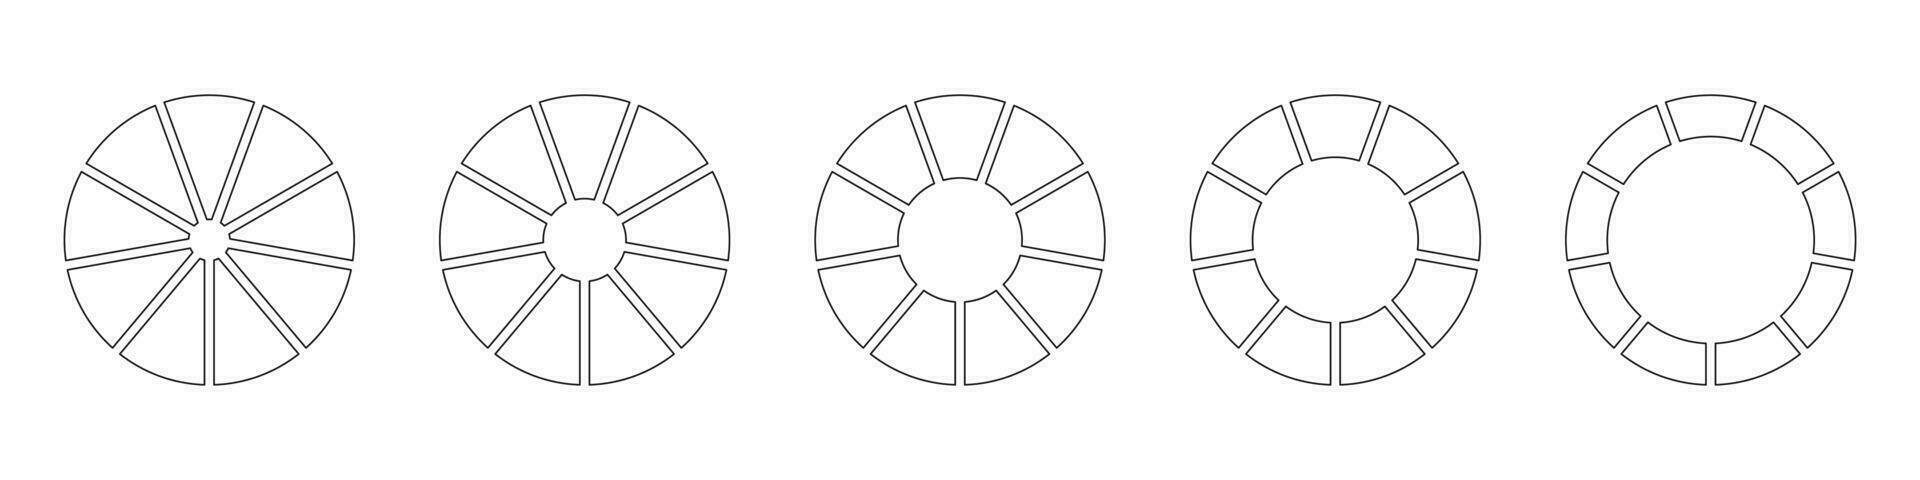 ruedas redondo dividido en nueve secciones. contorno rosquilla cartas o pasteles segmentario en 9 9 igual partes. diagramas infografía colocar. circulo sección grafico línea Arte. tarta gráfico iconos geométrico vector elementos.